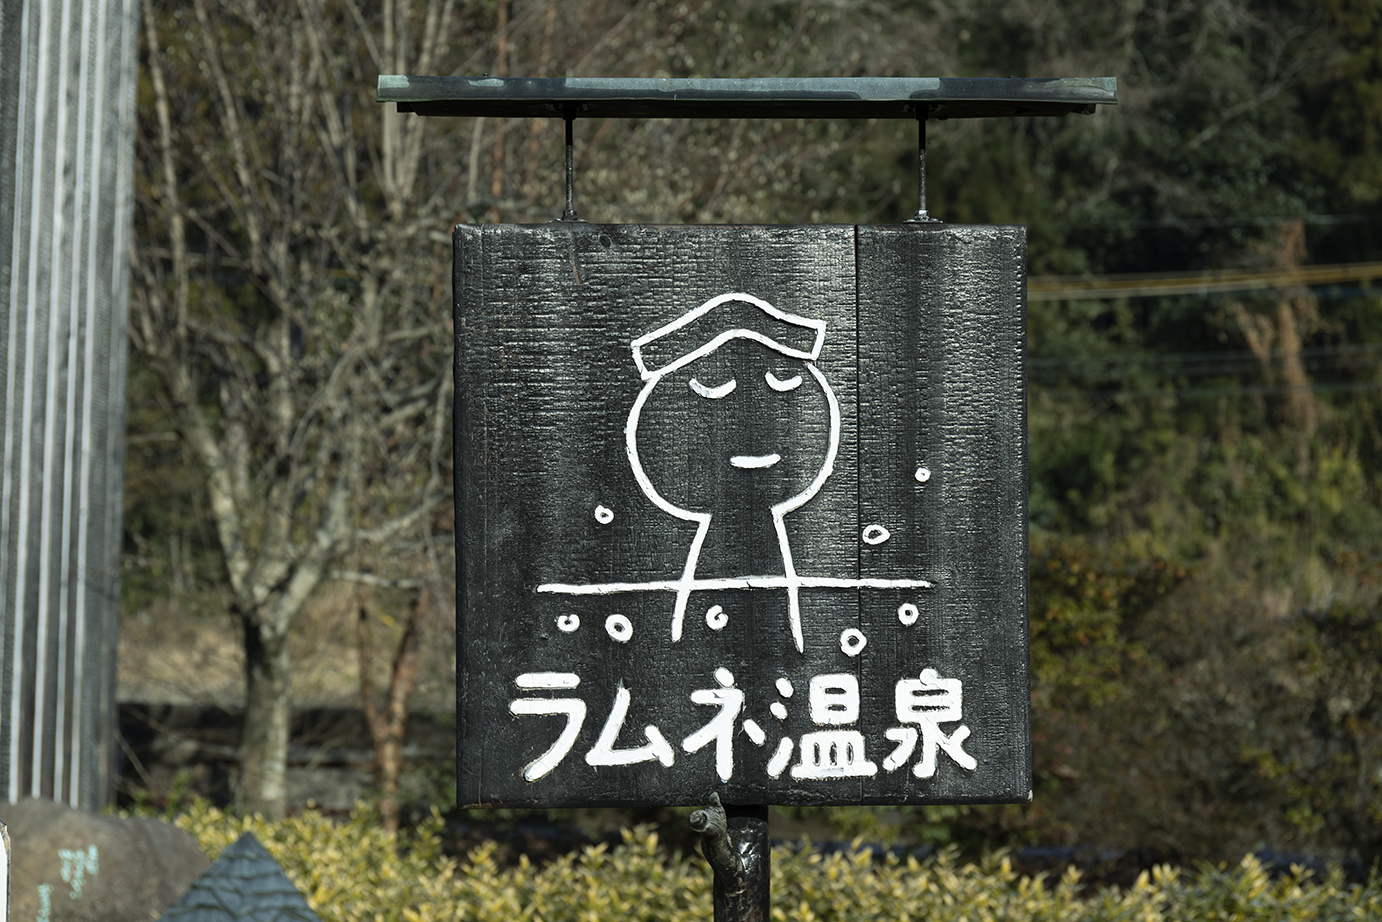 日本一かわいい〈ラムネ温泉〉で癒やされる!?